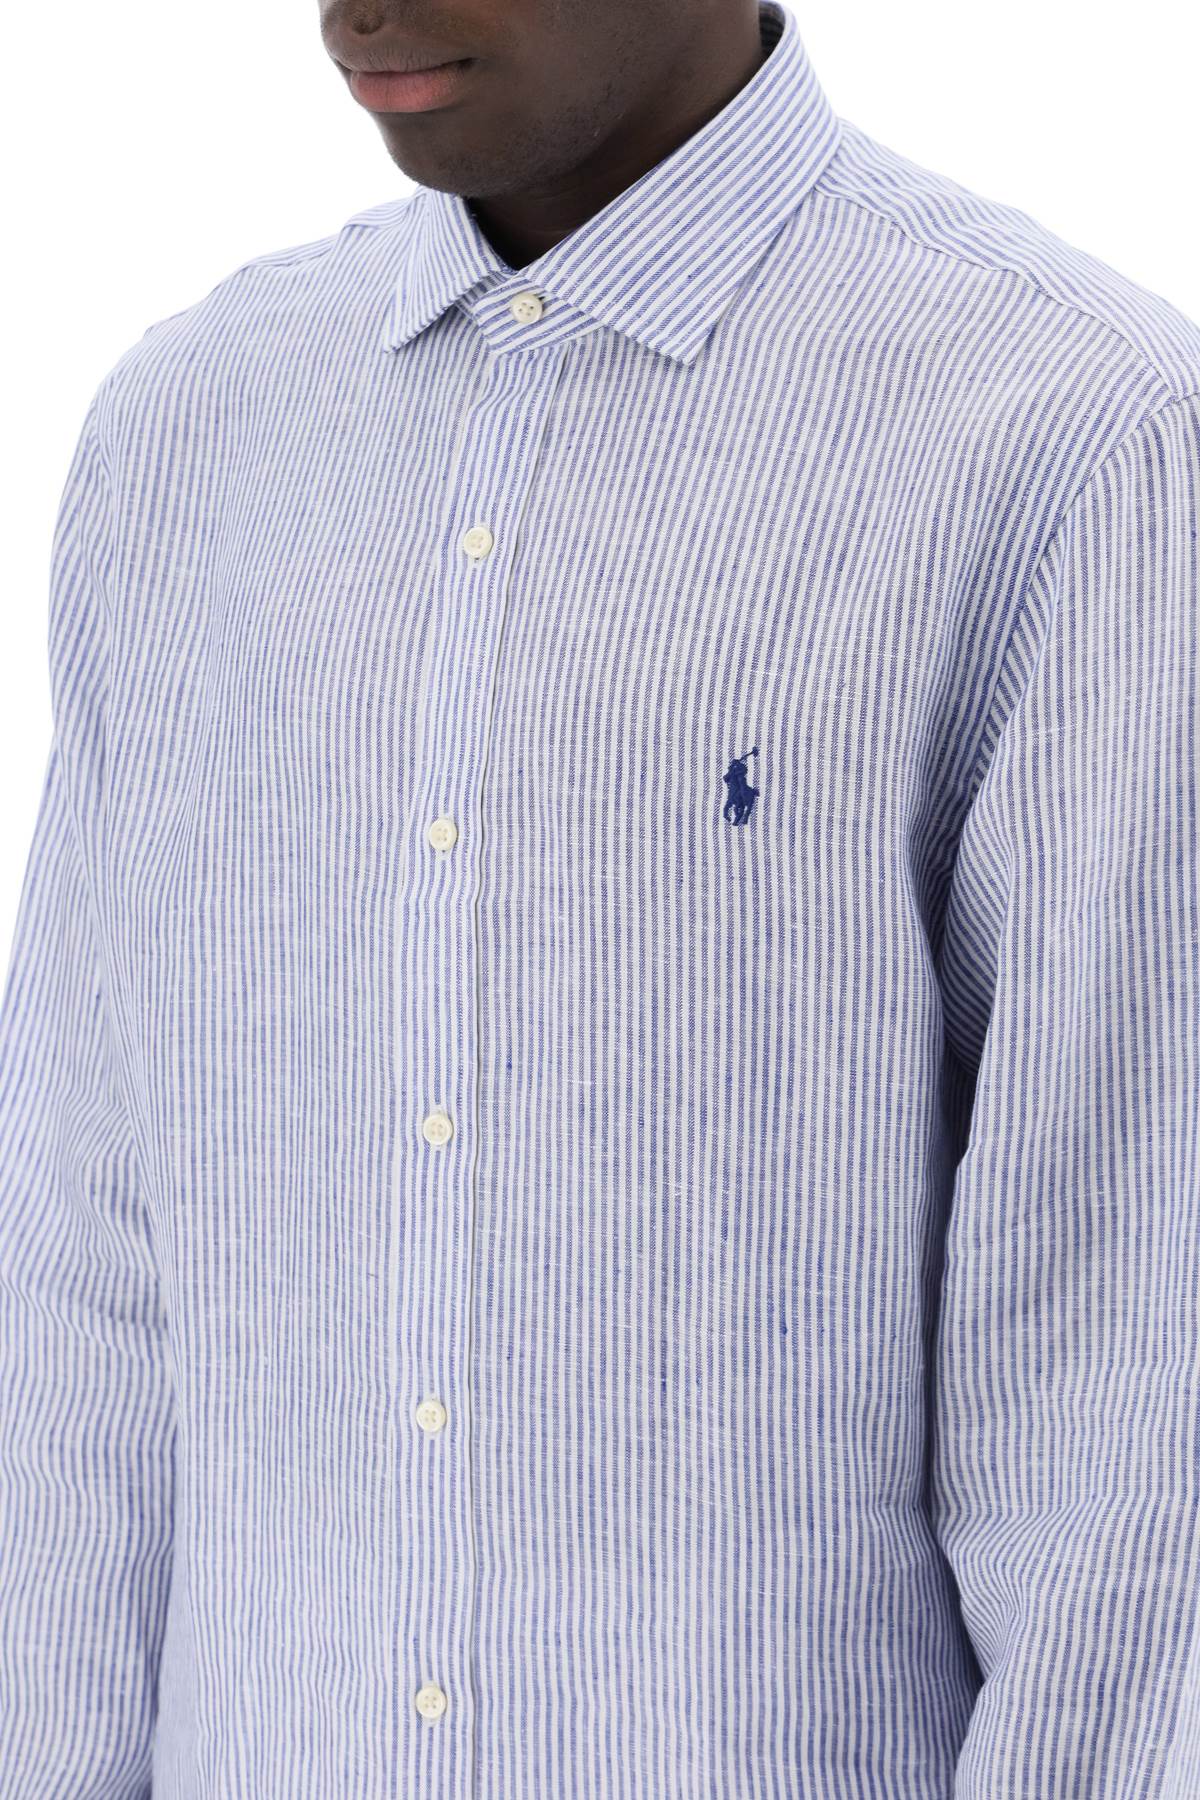 Polo ralph lauren slim fit linen shirt-3